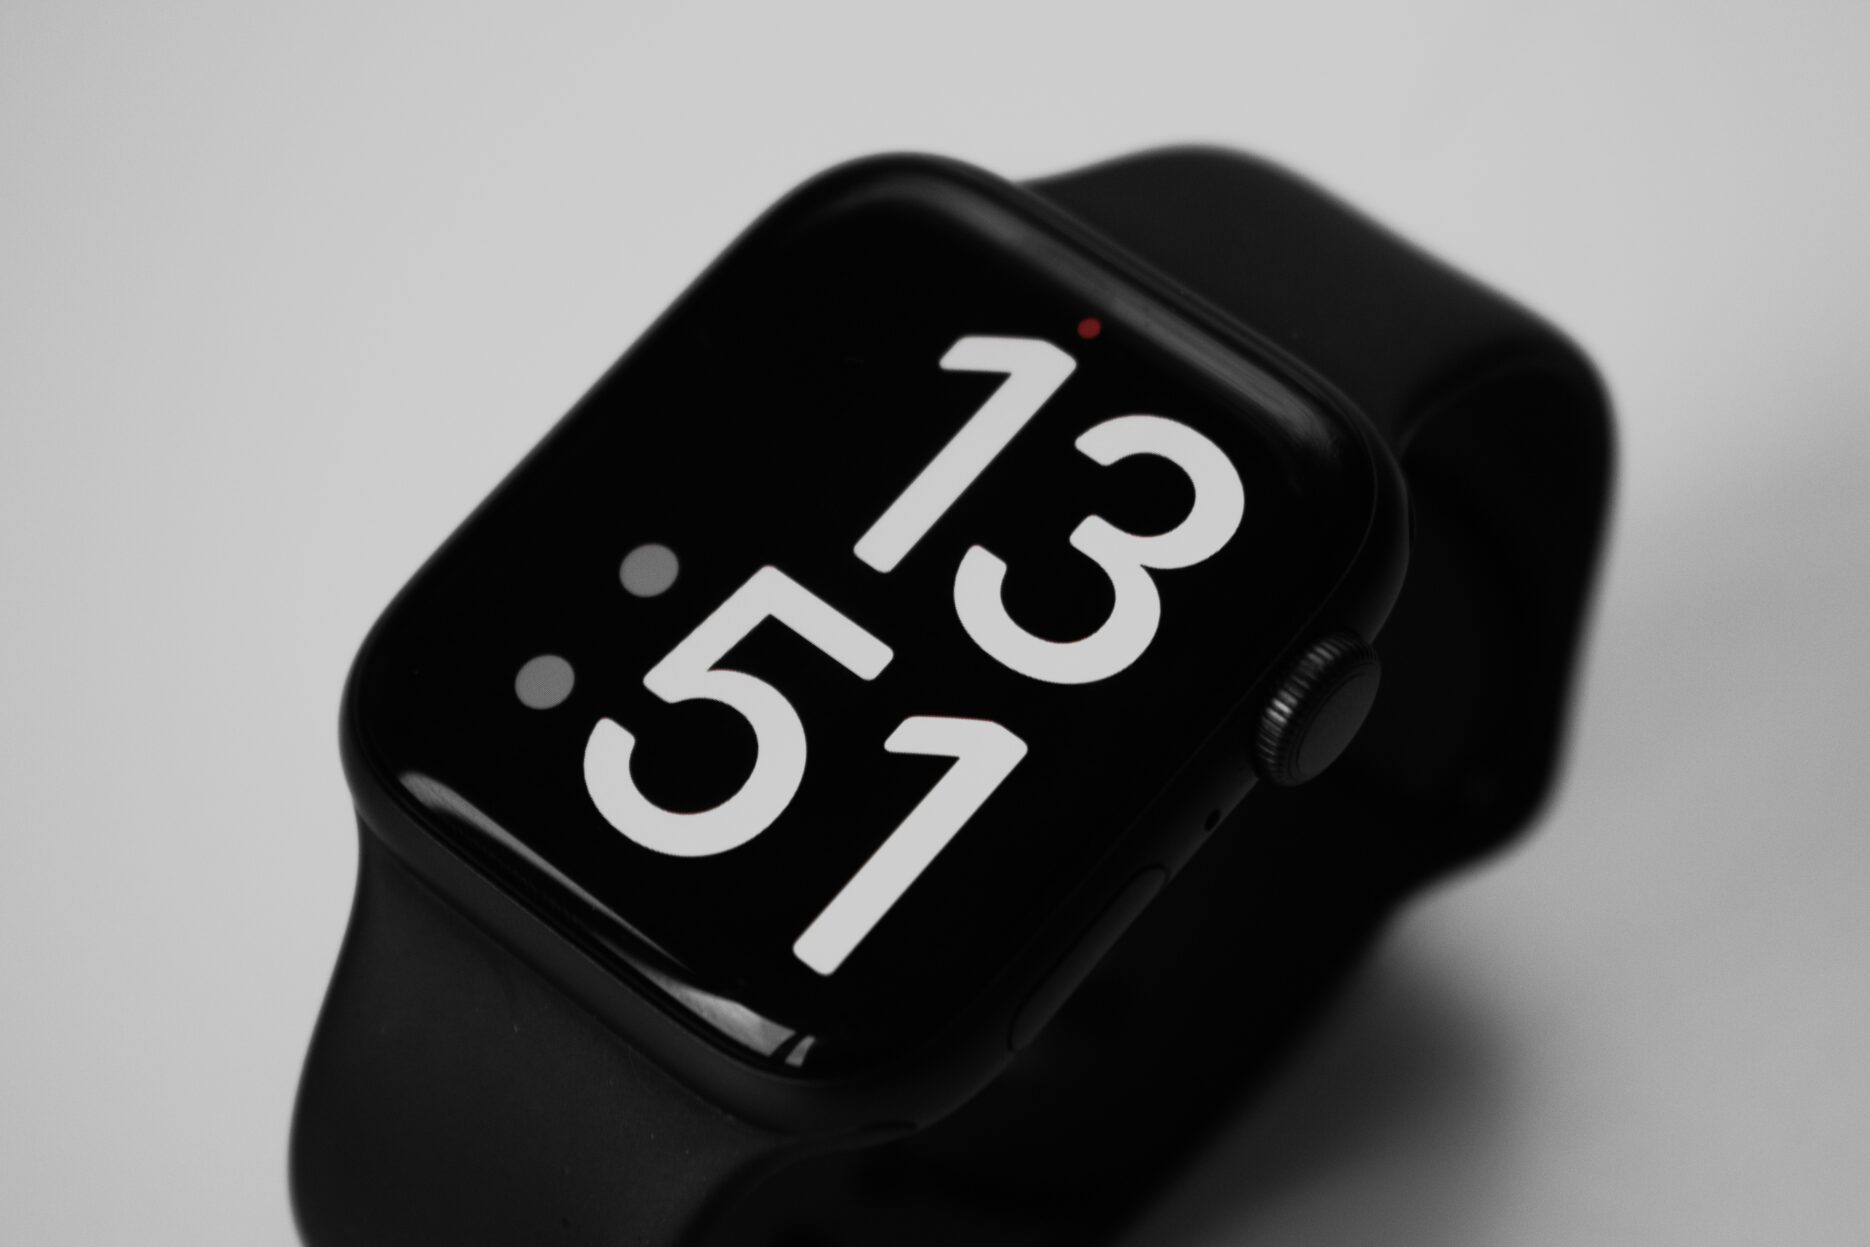 smartwatch induktiv ladbar